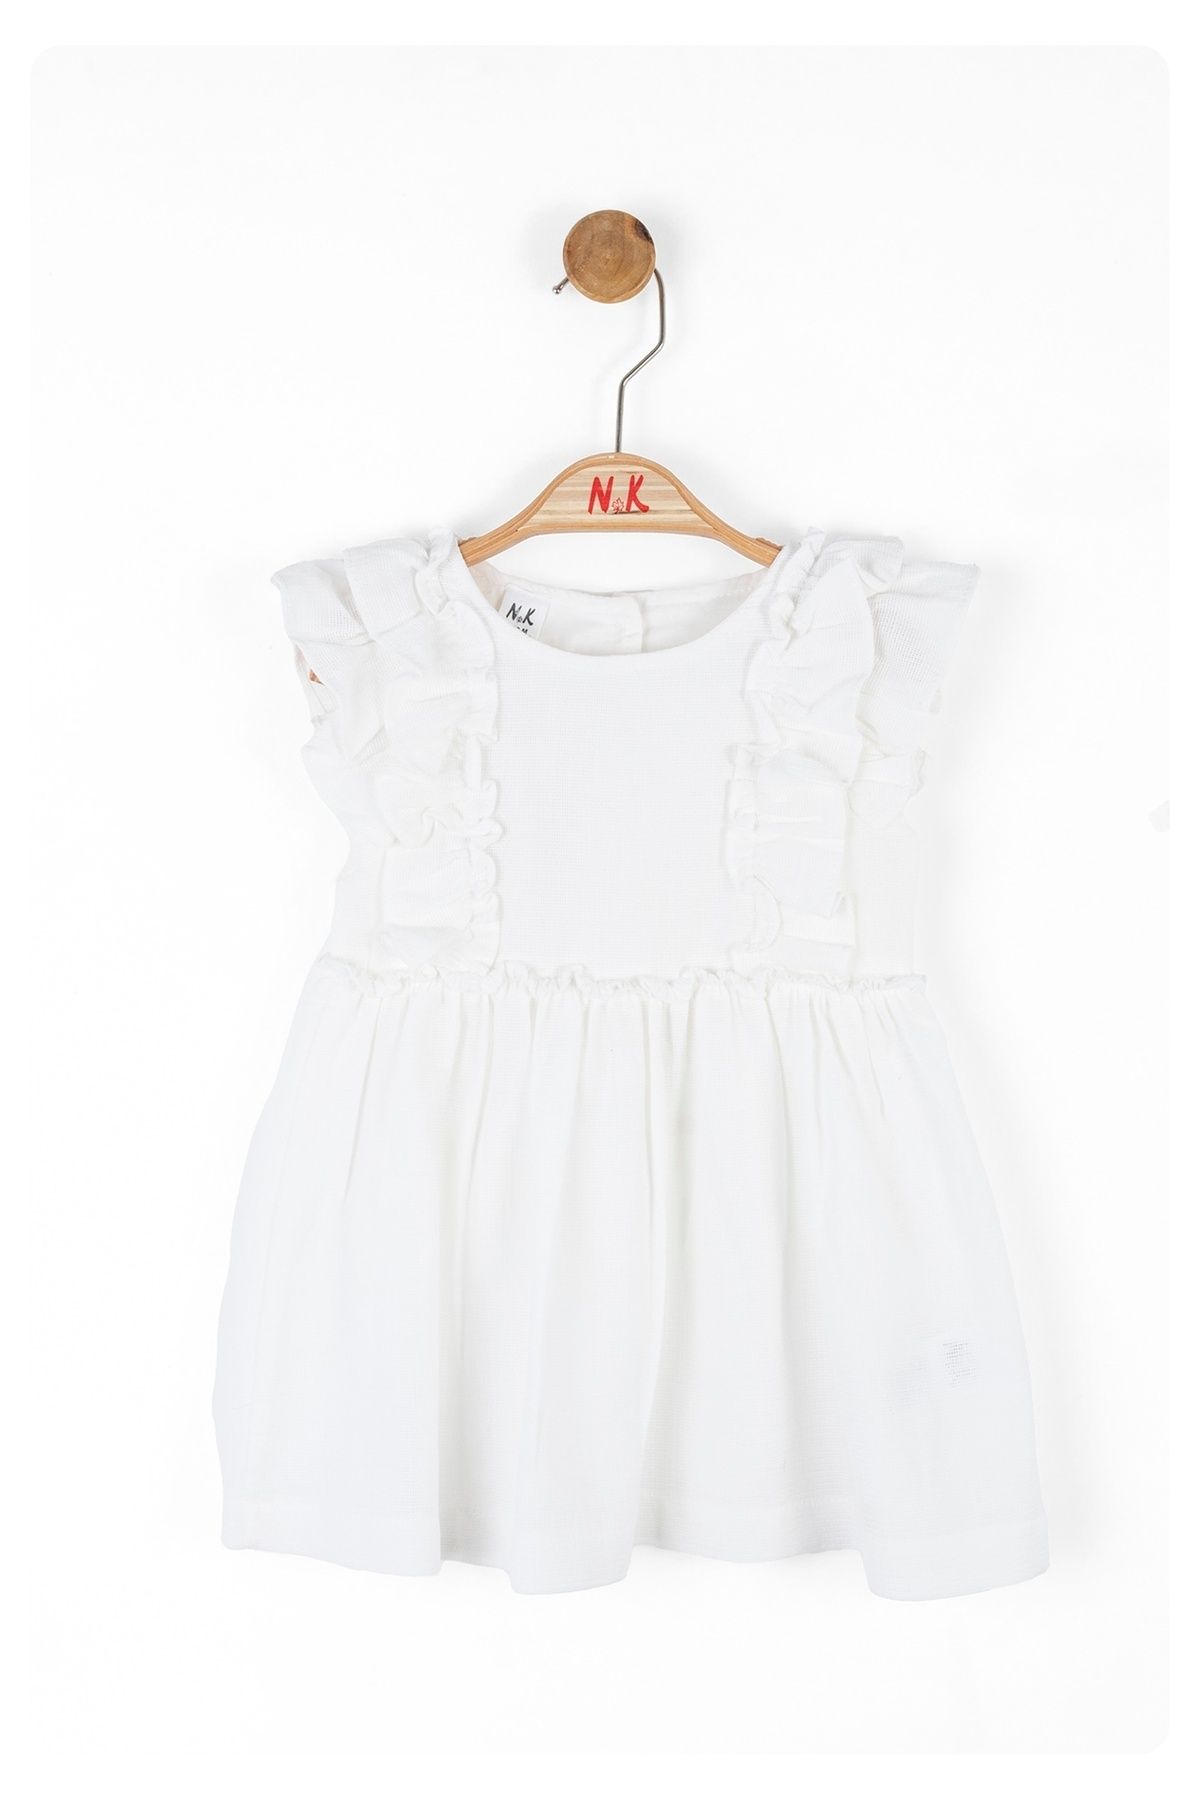 Nk Kids LİMİ kız bebek & çocuk  petek kumaş beyaz elbise